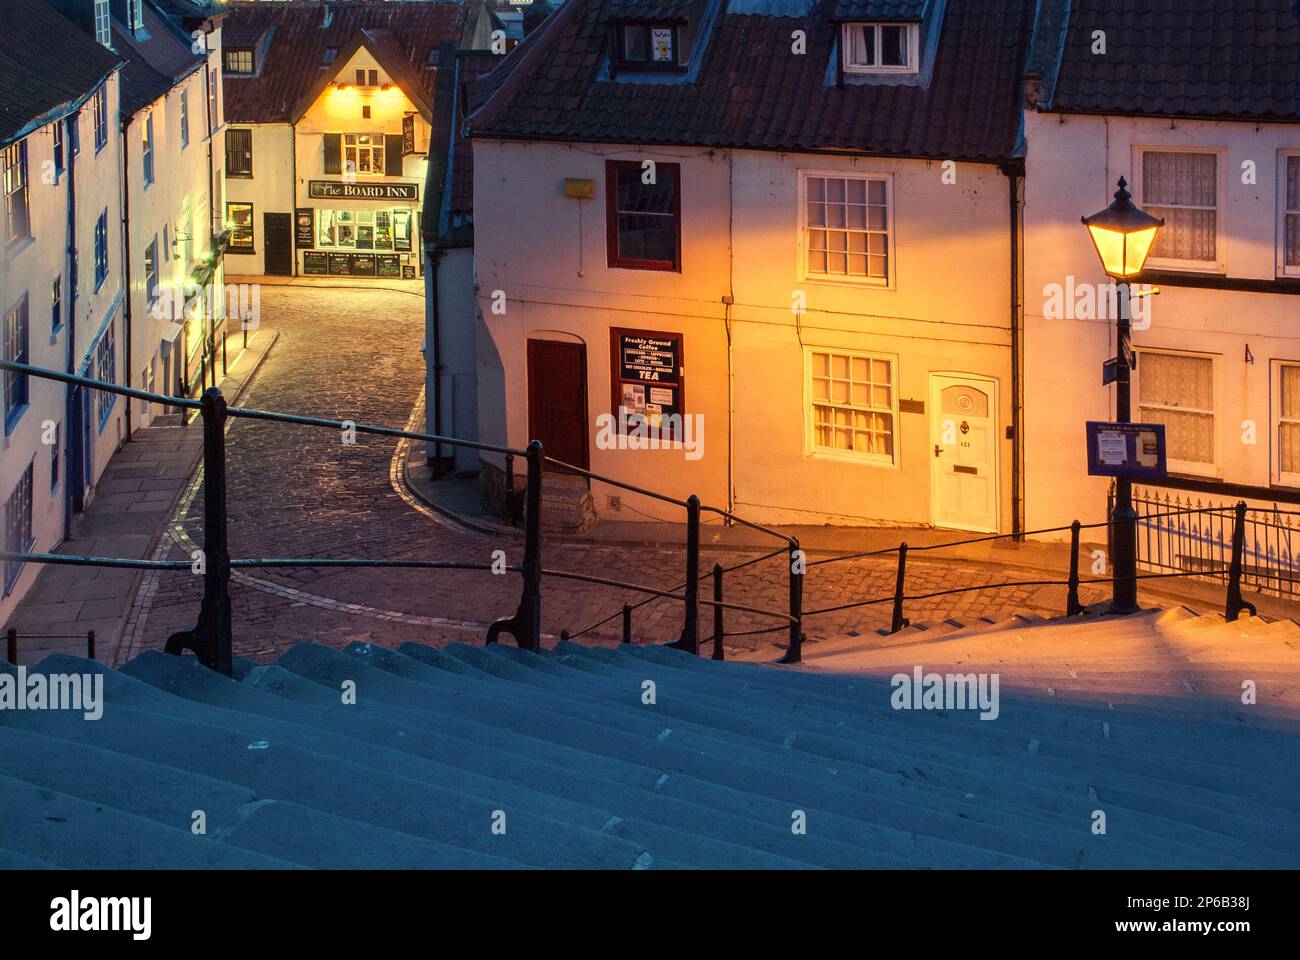 La luce del giorno inizia a svanire a Whitby, Yorkshire, Regno Unito Foto Stock